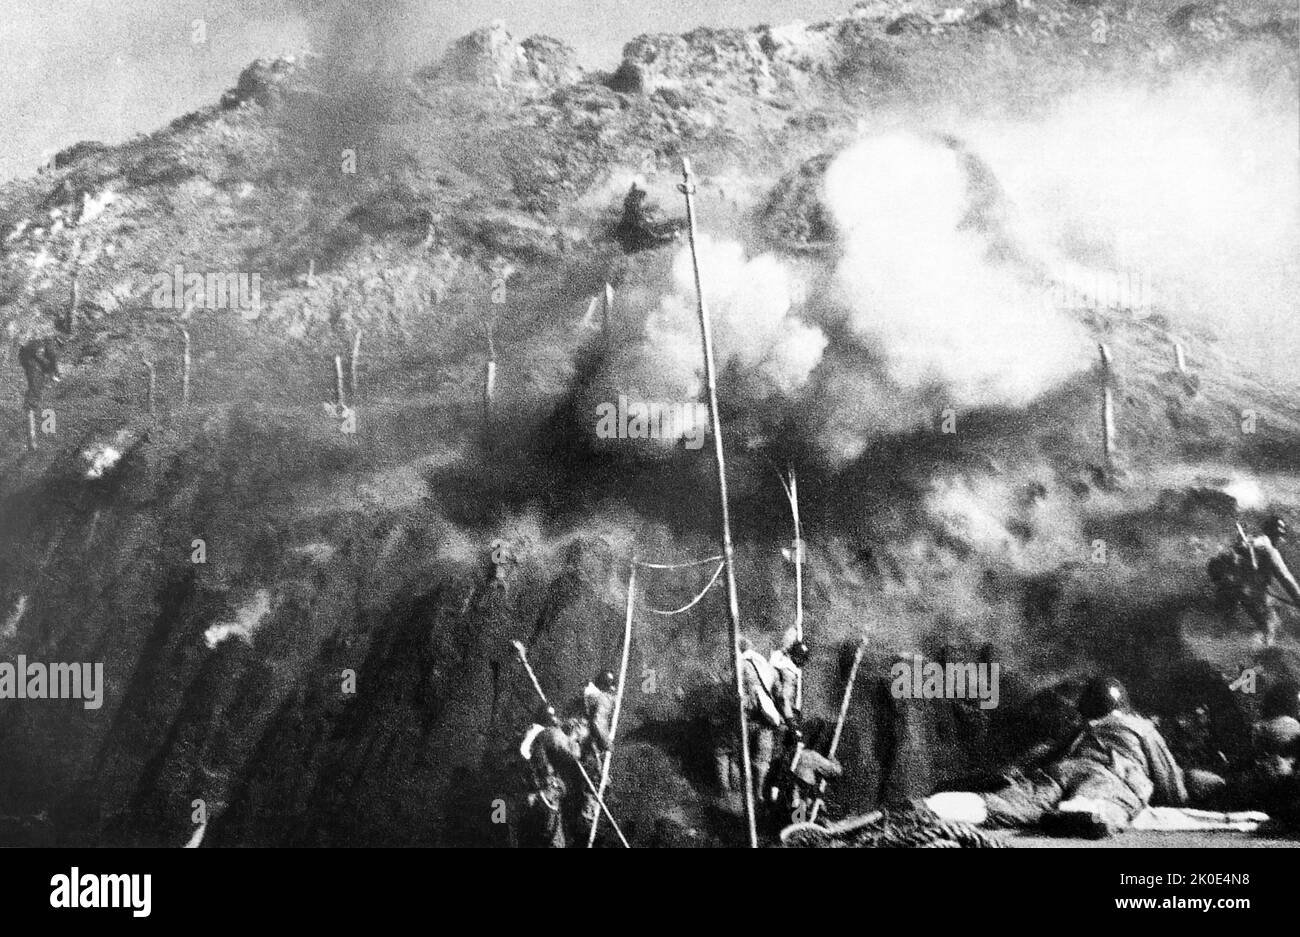 El 18 de enero de 1949, una unidad del Ejército Popular de Liberación en la línea del frente de Zhejiang, con la estrecha cooperación de la marina y la fuerza aérea, cruzó el mar para luchar, liberando al atrincherado ejército de Chiang Kai-shek. Jiangshan. Foto de stock